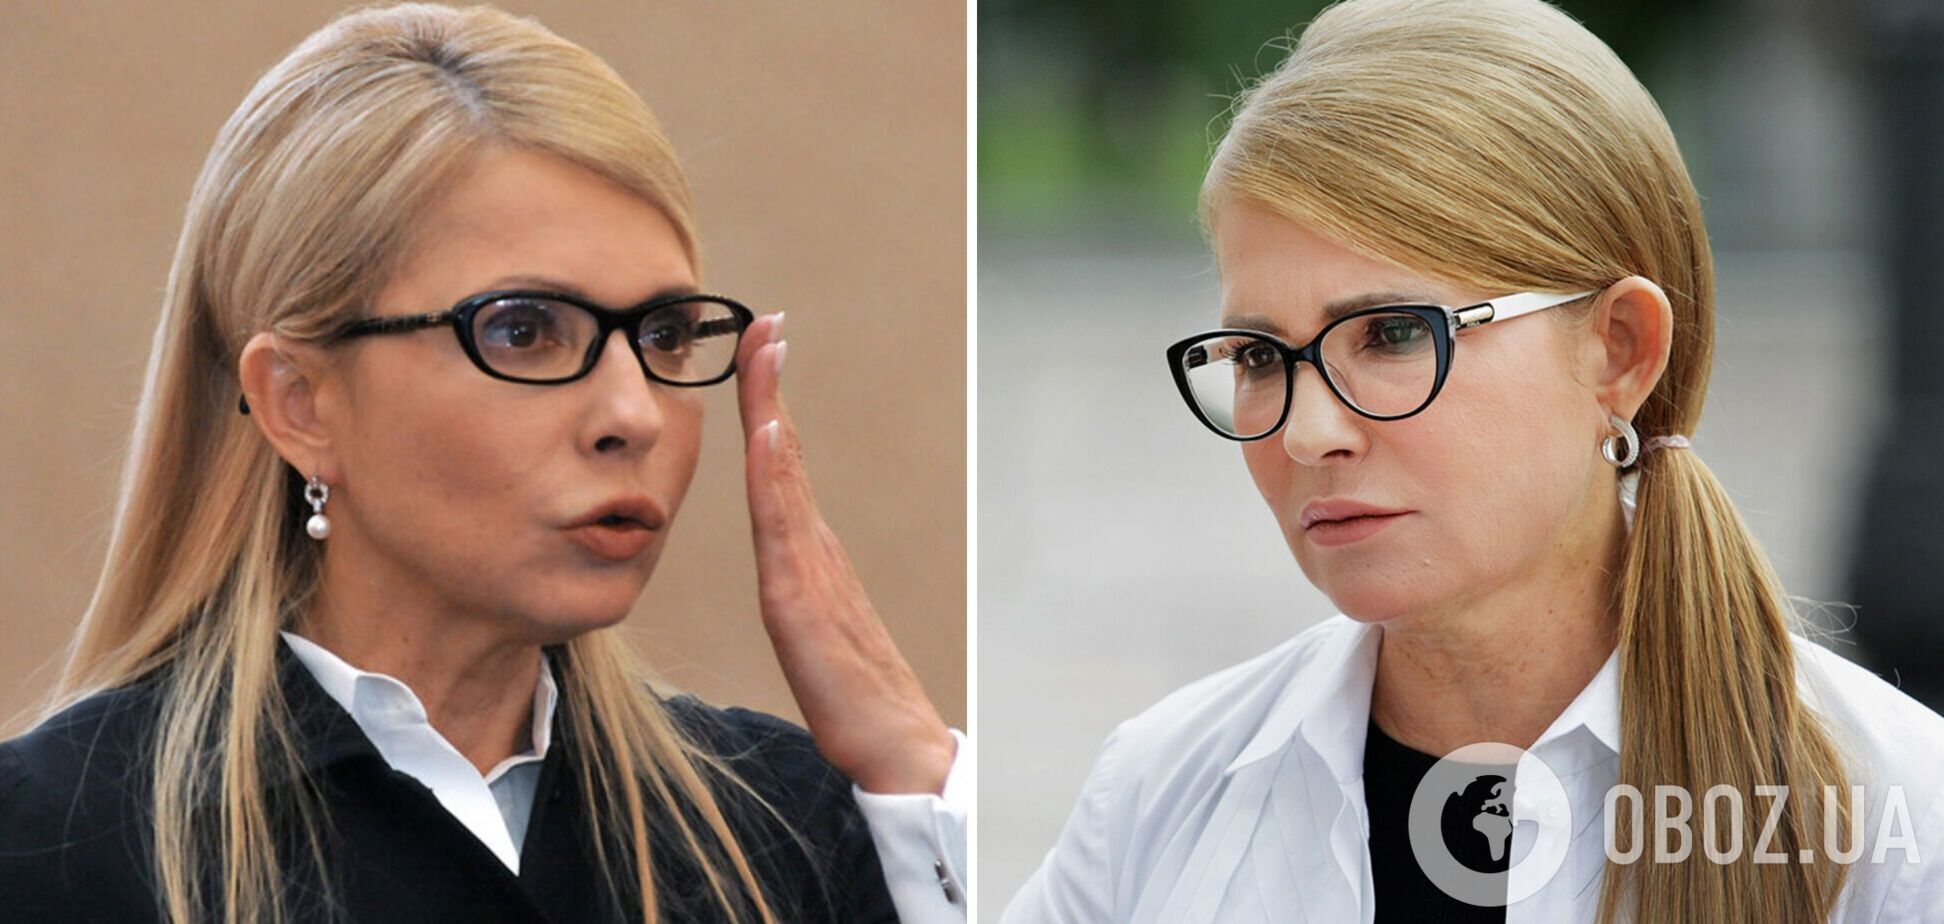 Тимошенко пришла в Раду в стильном образе. Фото